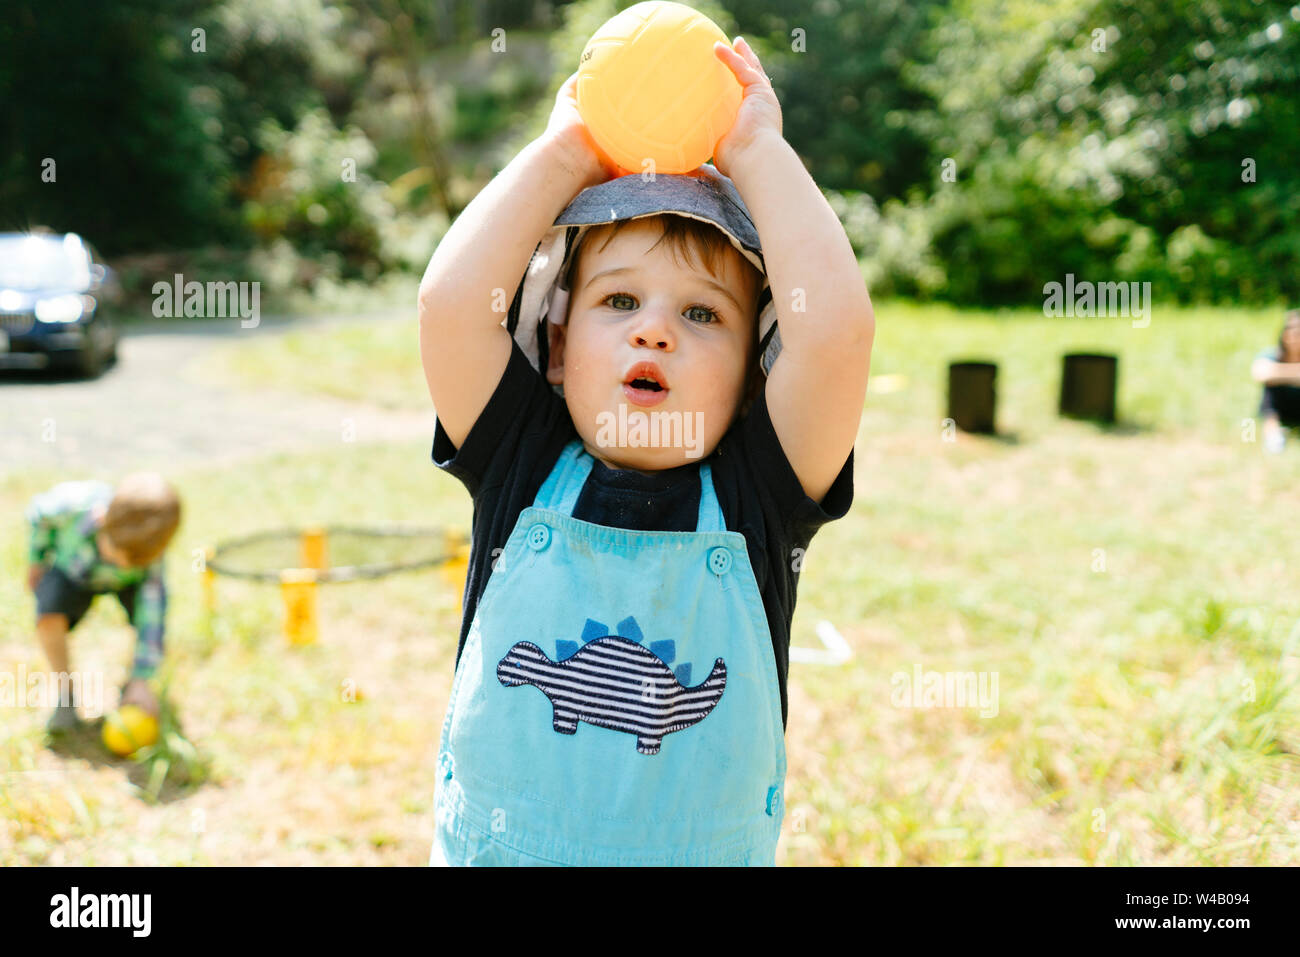 Primo piano ritagliato ritratto di un bimbo piccolo ragazzo giocando con un giocattolo sfera Foto Stock